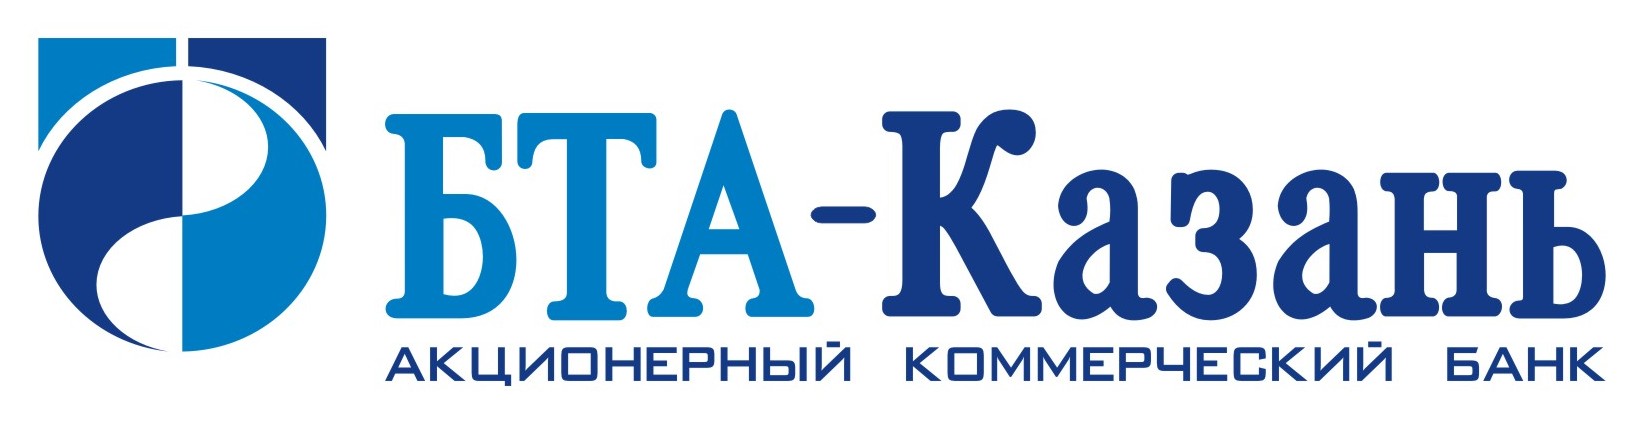 БТА-Казань - Волжско-Камский акционерный банк